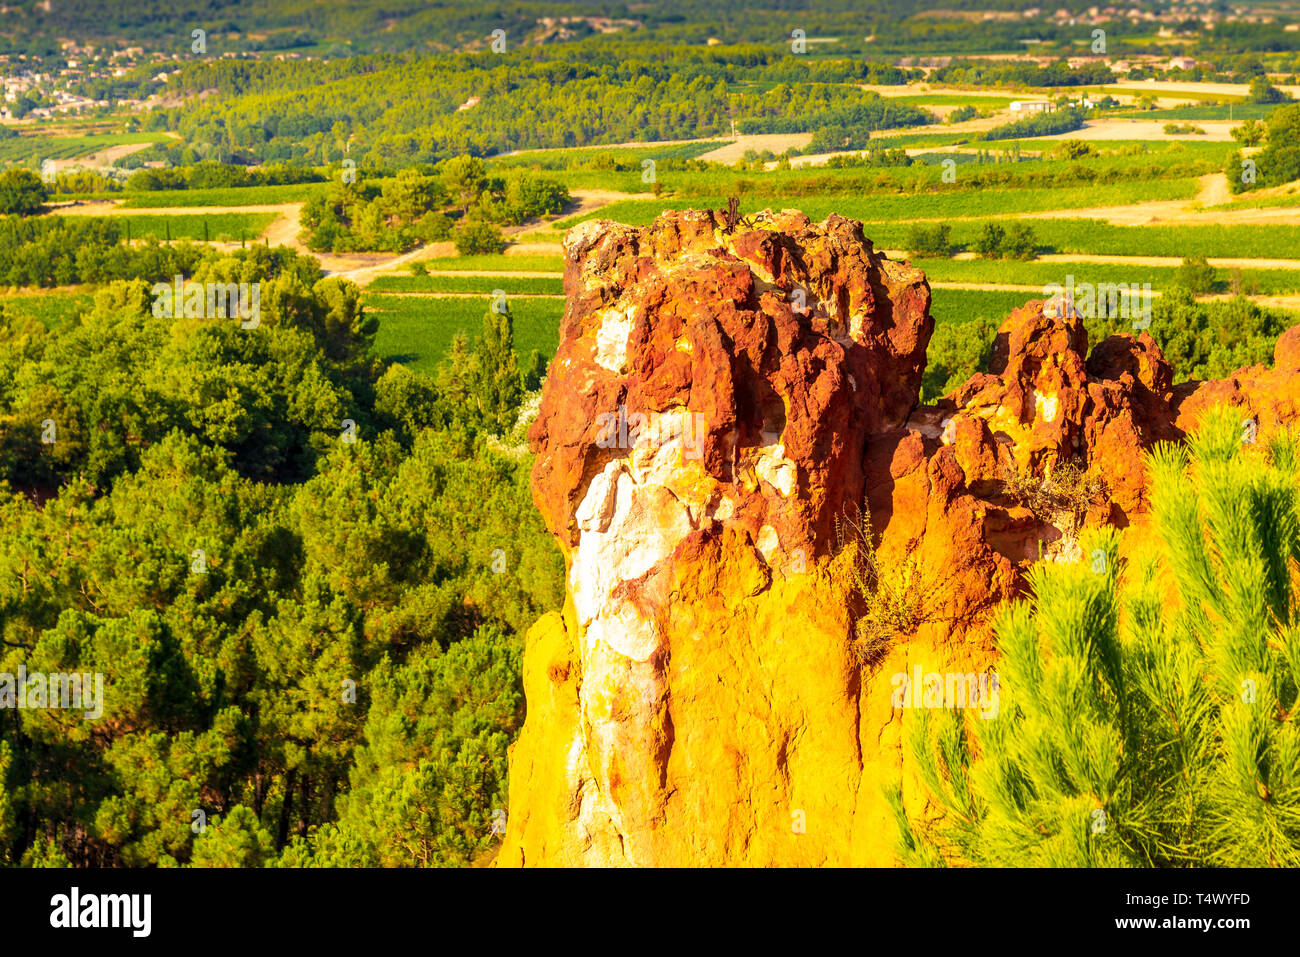 ROUSSILLION, Frankreich/August 16, 2016: Ein Blick auf die ockerfarbenen Klippen von Roussillon, geordnet als eines der schönsten Dörfer von Frankreich Stockfoto